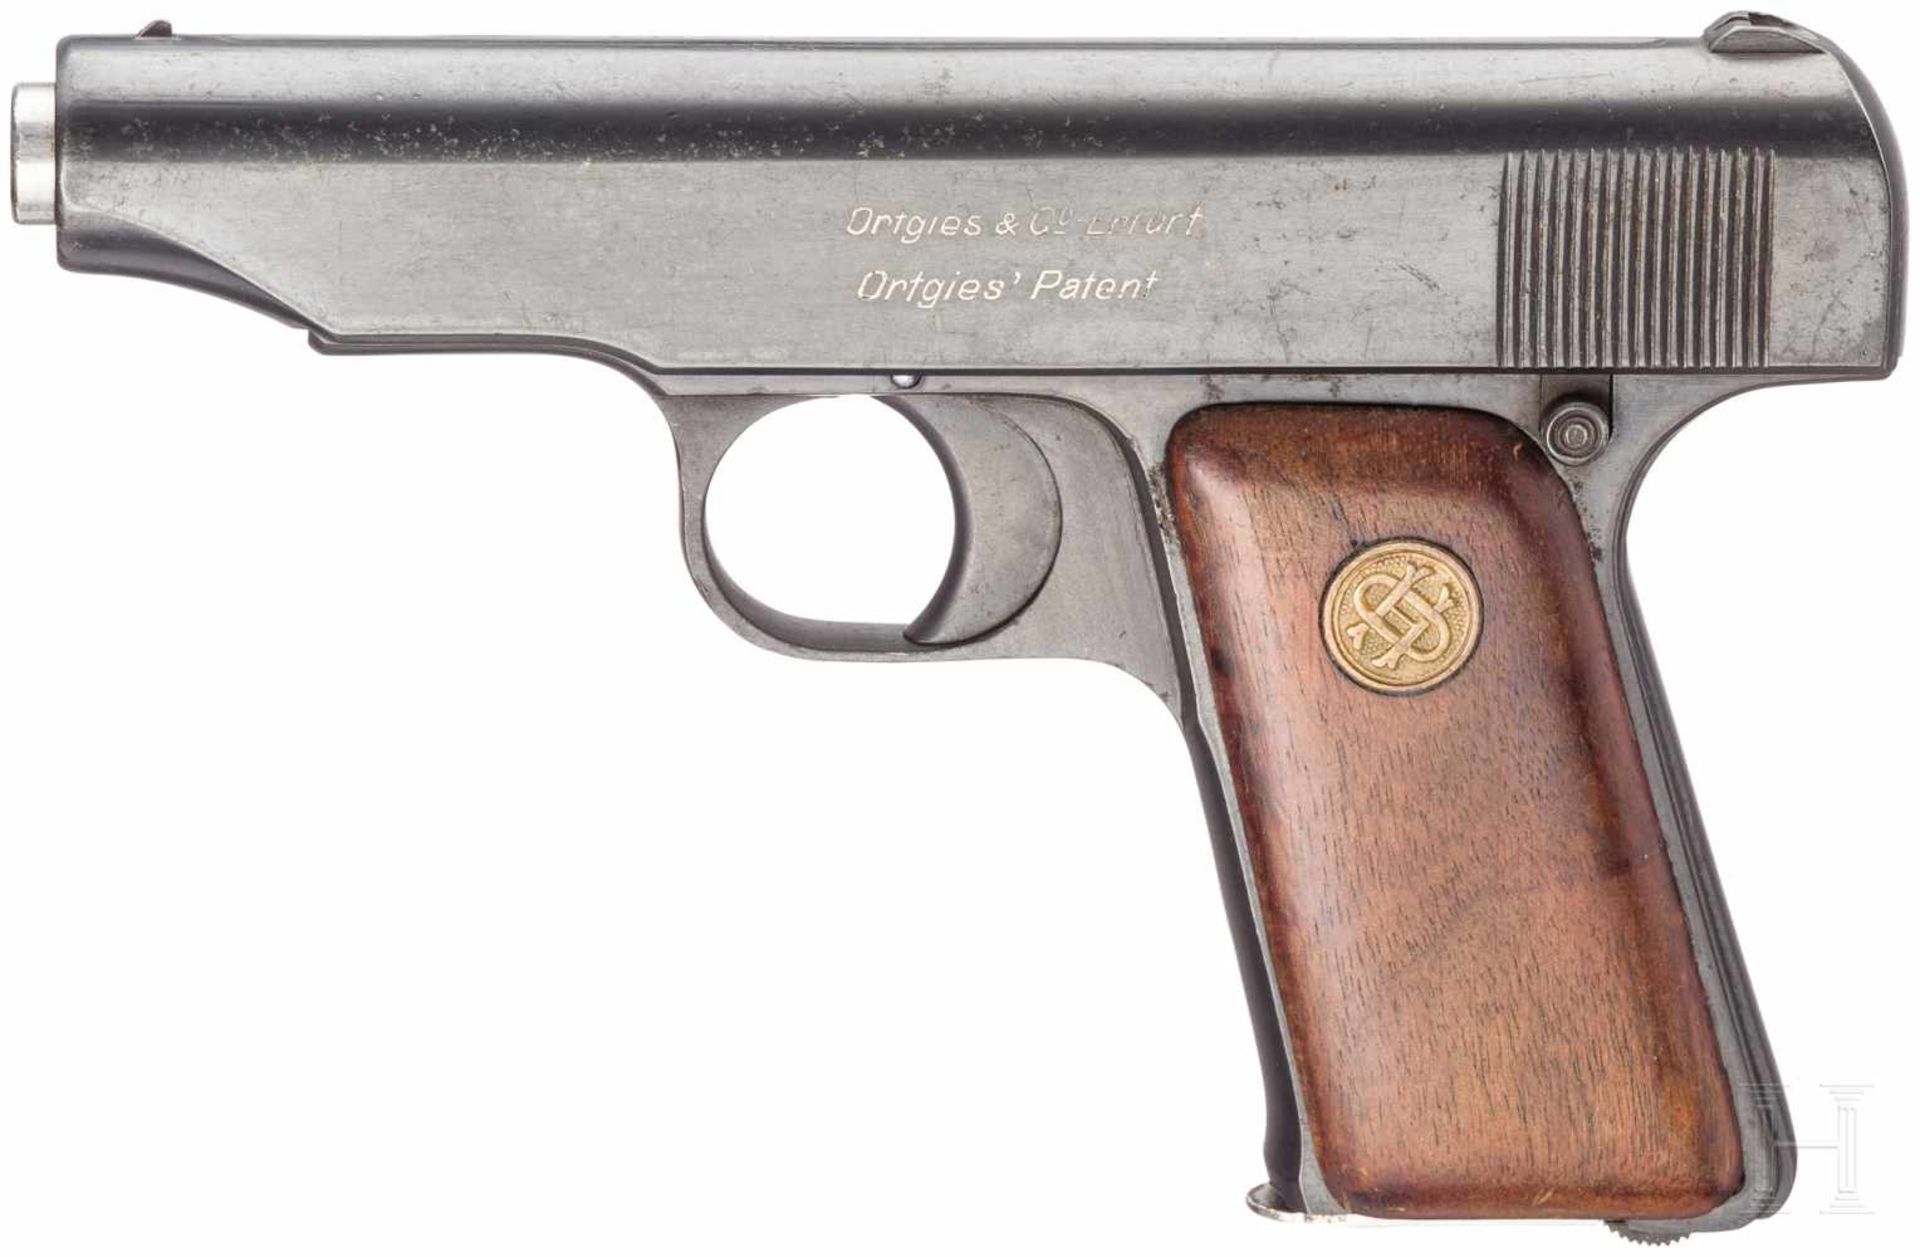 Pistole Ortgies, mit TascheKal. 7,65 mm Brown., Nr. 10008, Nummerngleich. Blanker Lauf.